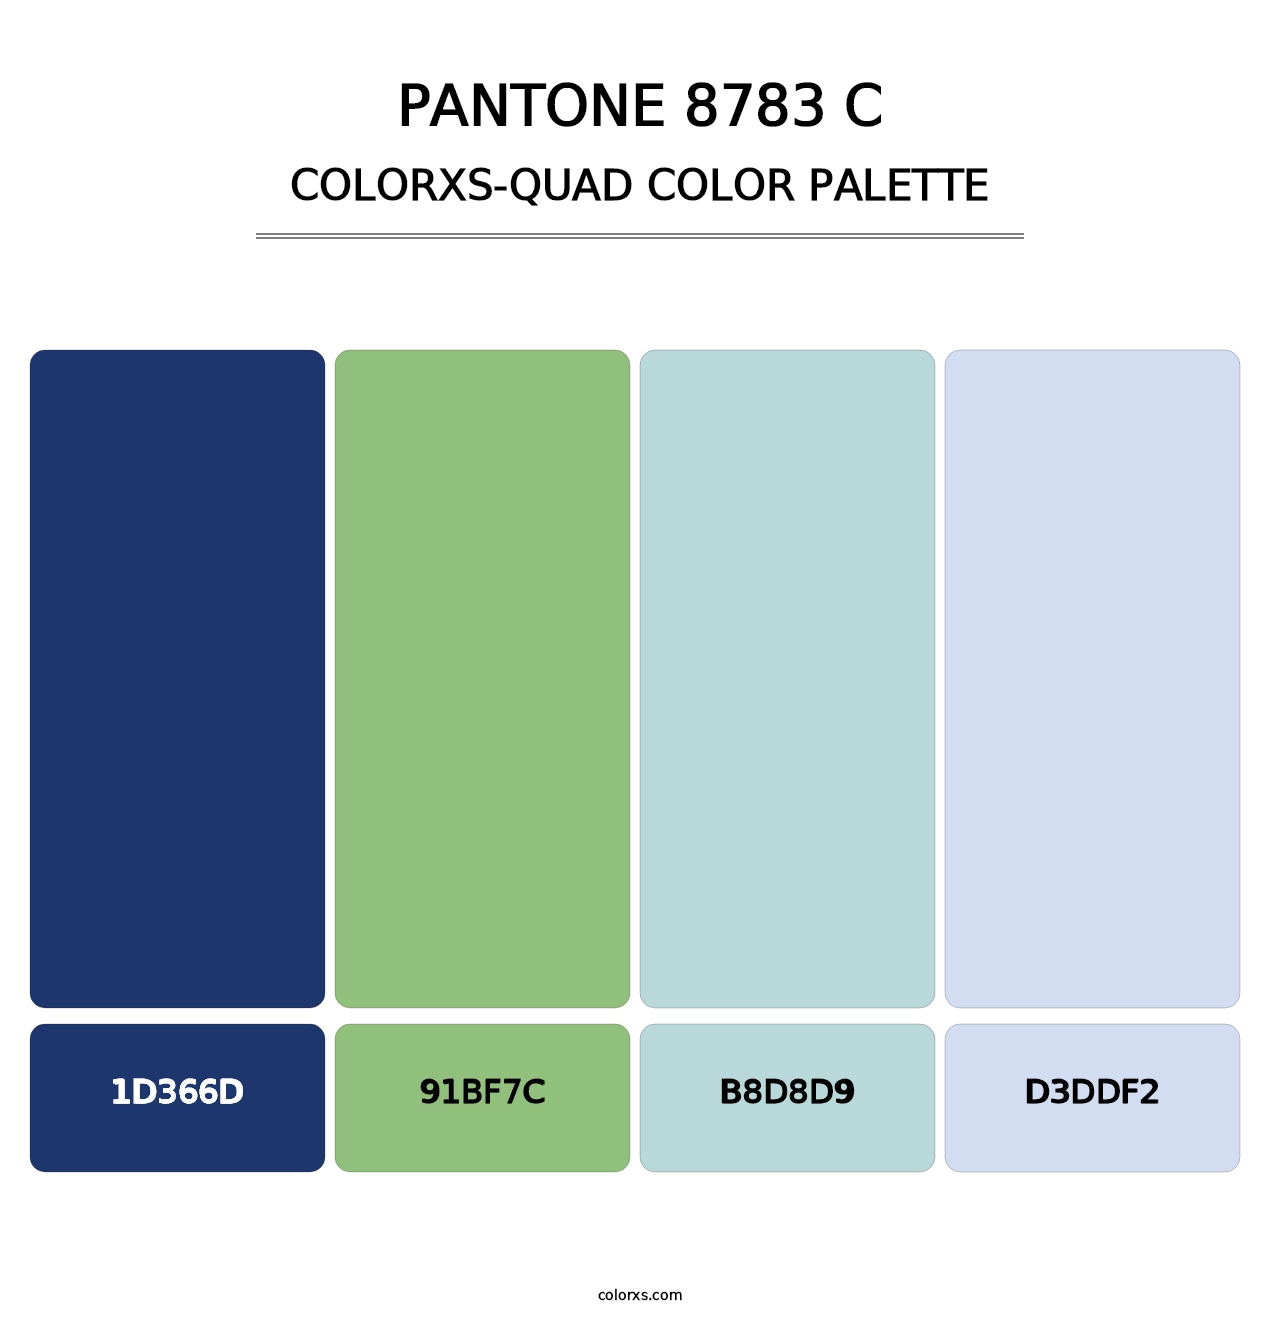 PANTONE 8783 C - Colorxs Quad Palette